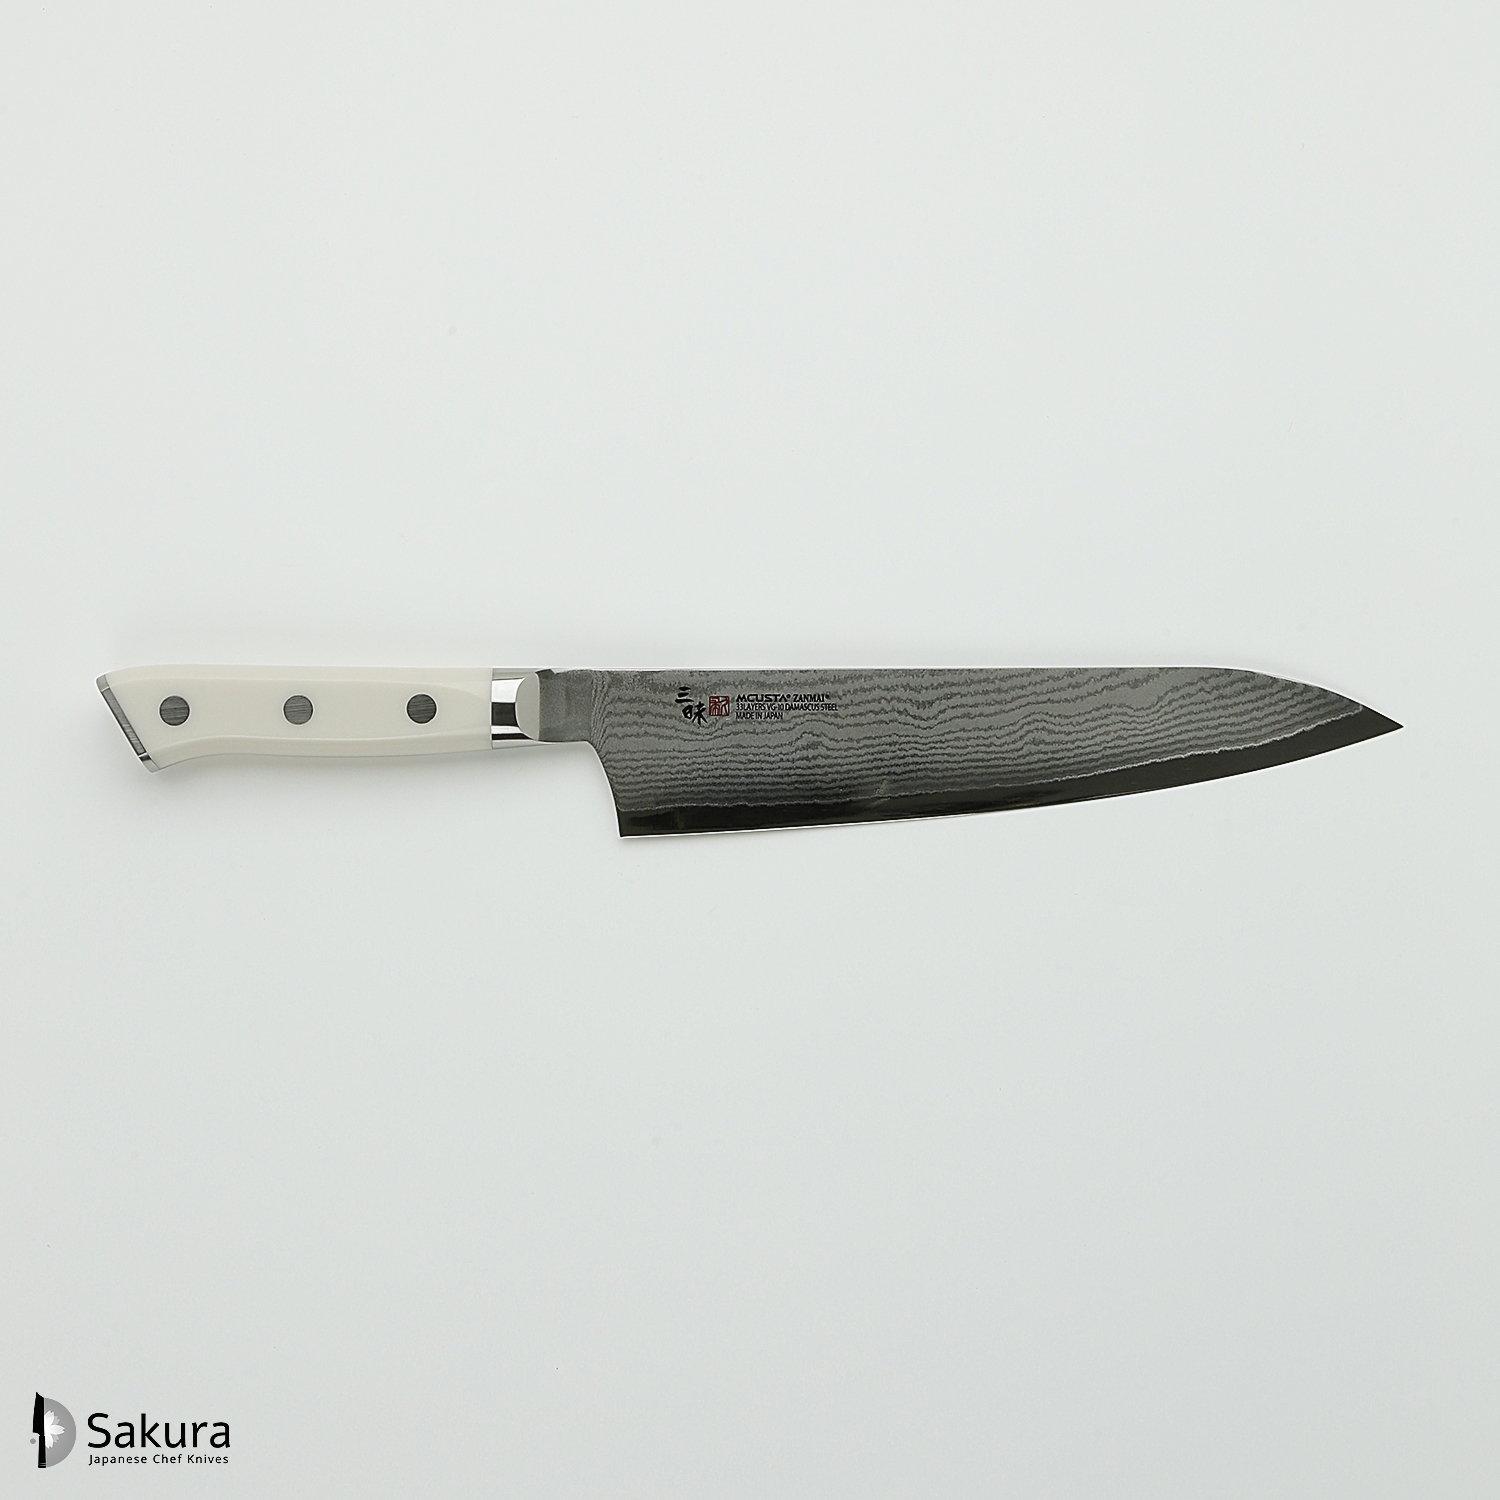 סכין שף רב-תכליתית גִּיוּטוֹ 210מ״מ מחושלת בעבודת יד 33 שכבות: פלדת פחמן יפנית VG-10 עטופה 32 שכבות פלדת דמשק אל-חלד גימור דמשק 33 שכבות מקוסטה זאנמאיי יפן HKC-3005D